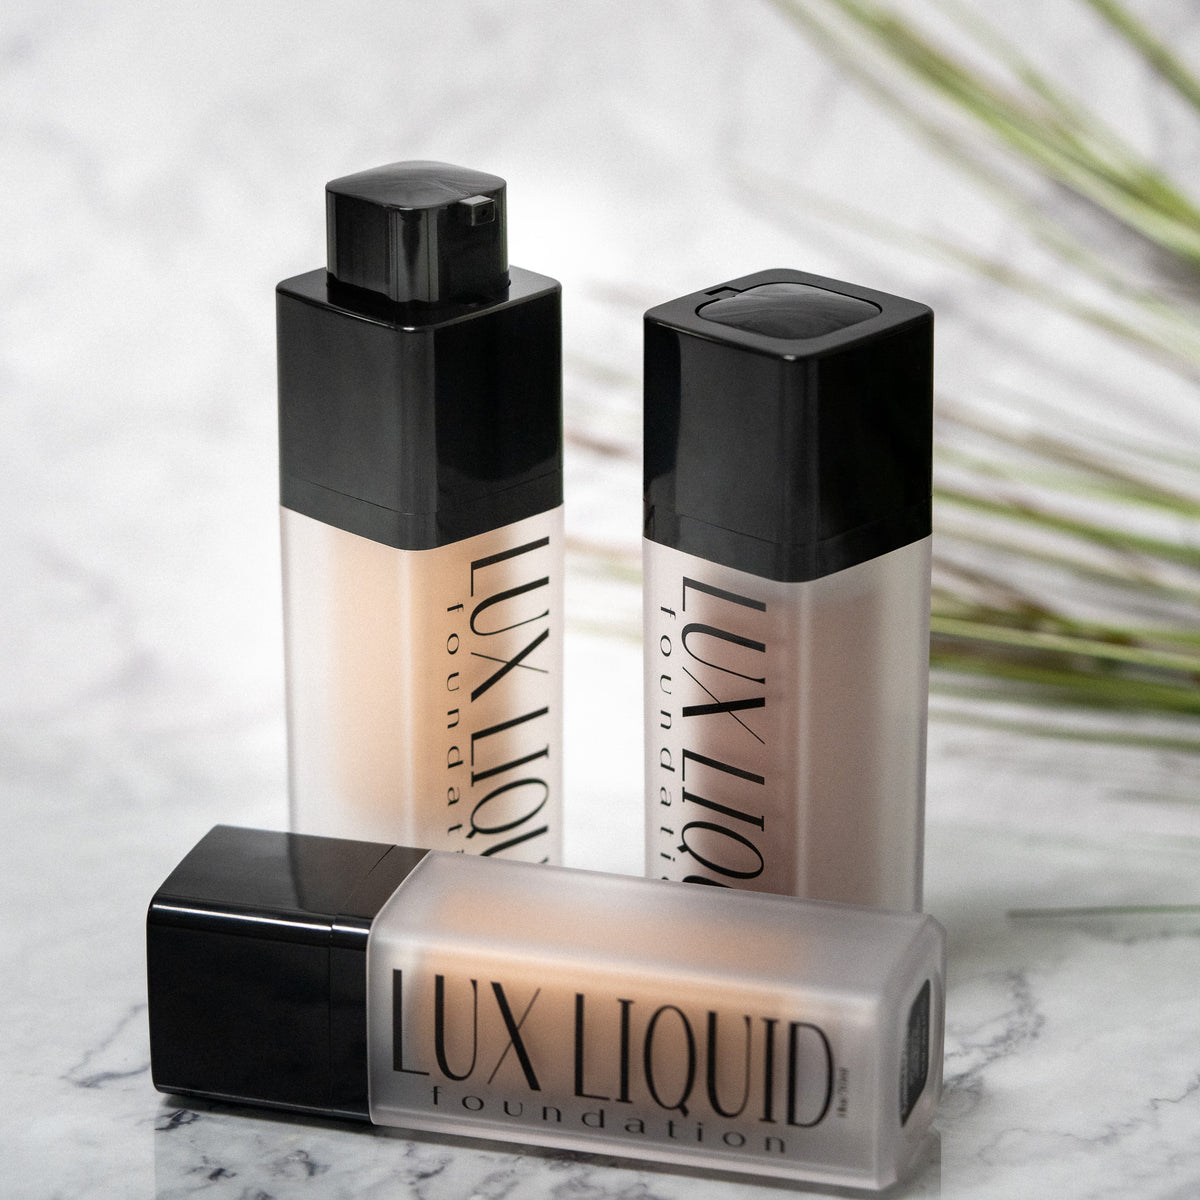 Lux Liquid Foundation